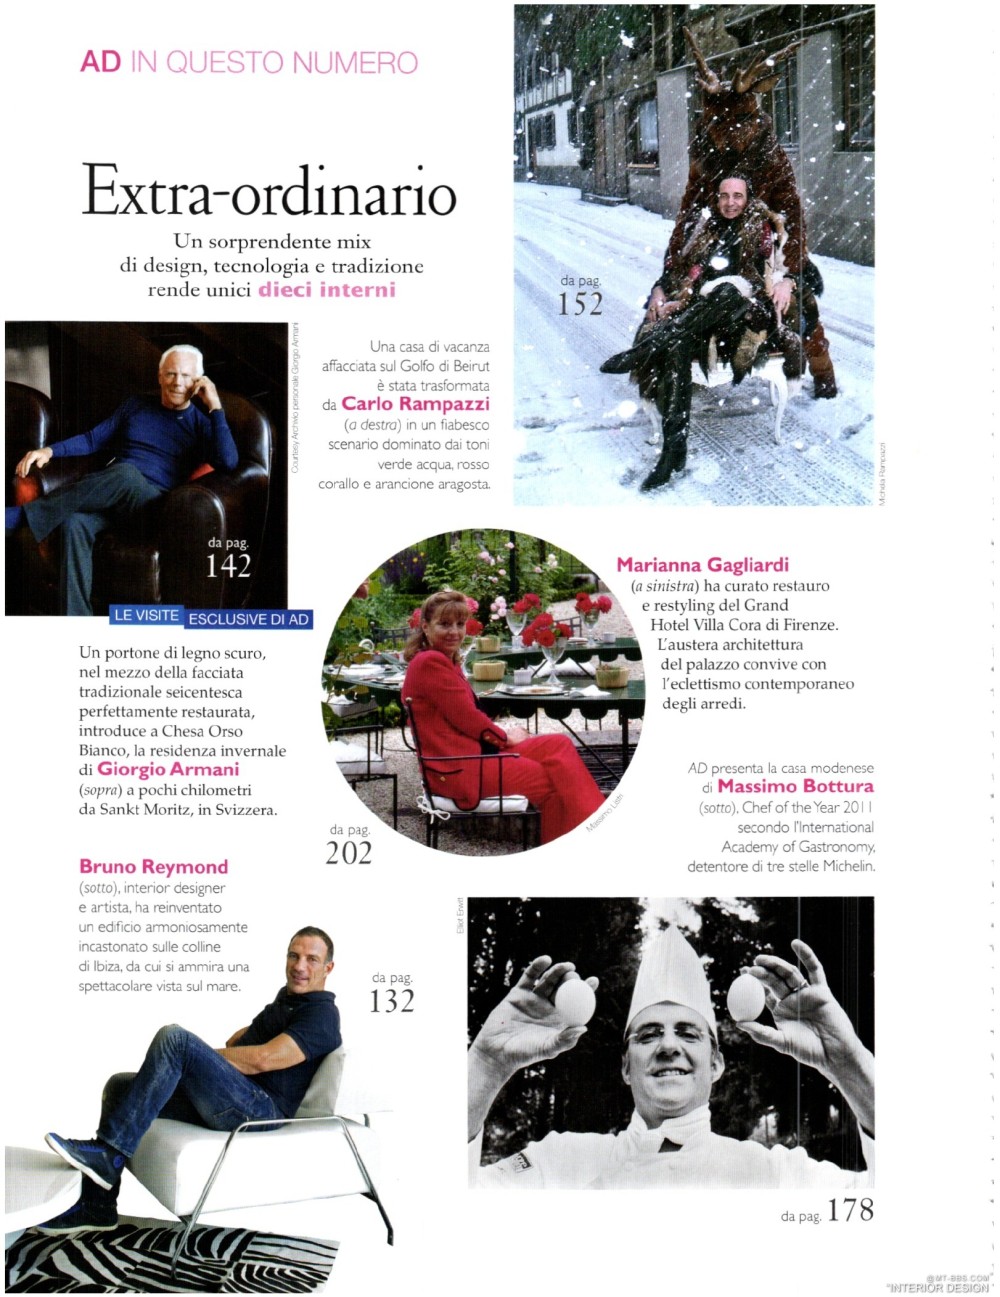 意大利AD 杂志 2012年全年JPG高清版本 全免（上传完毕）_0020.jpg